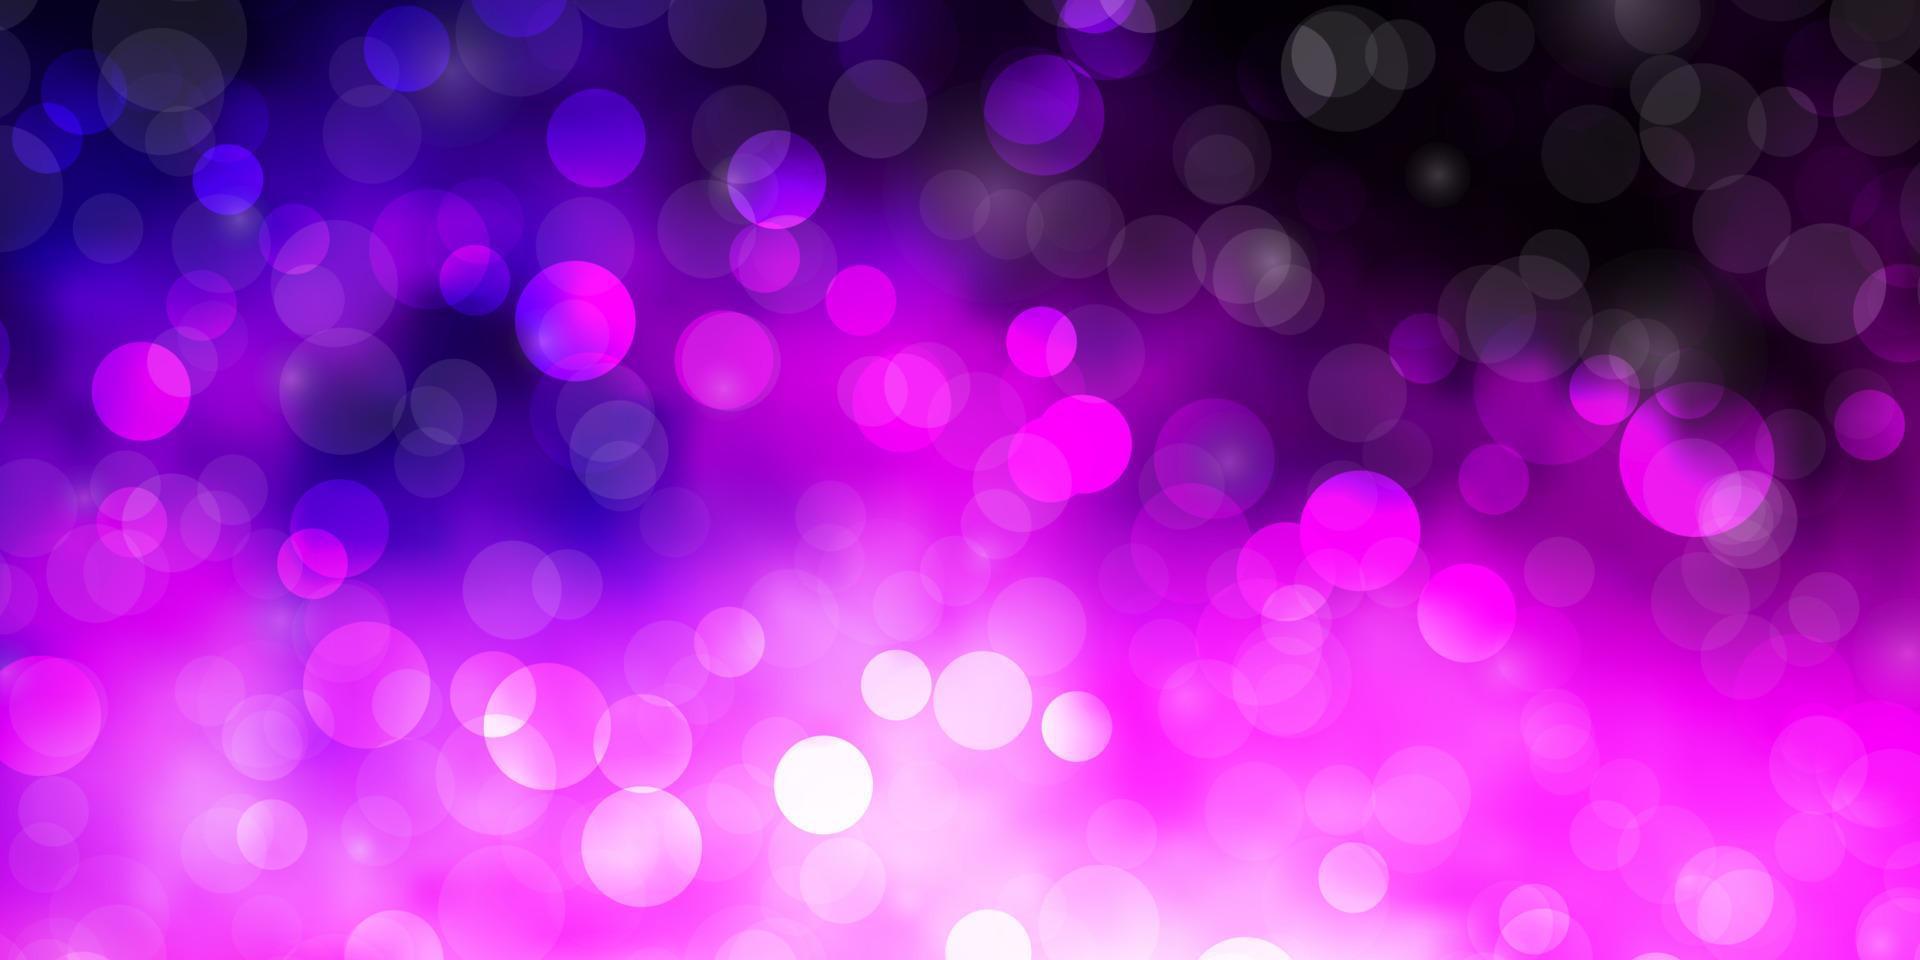 plantilla de vector de color púrpura oscuro, rosa con círculos.